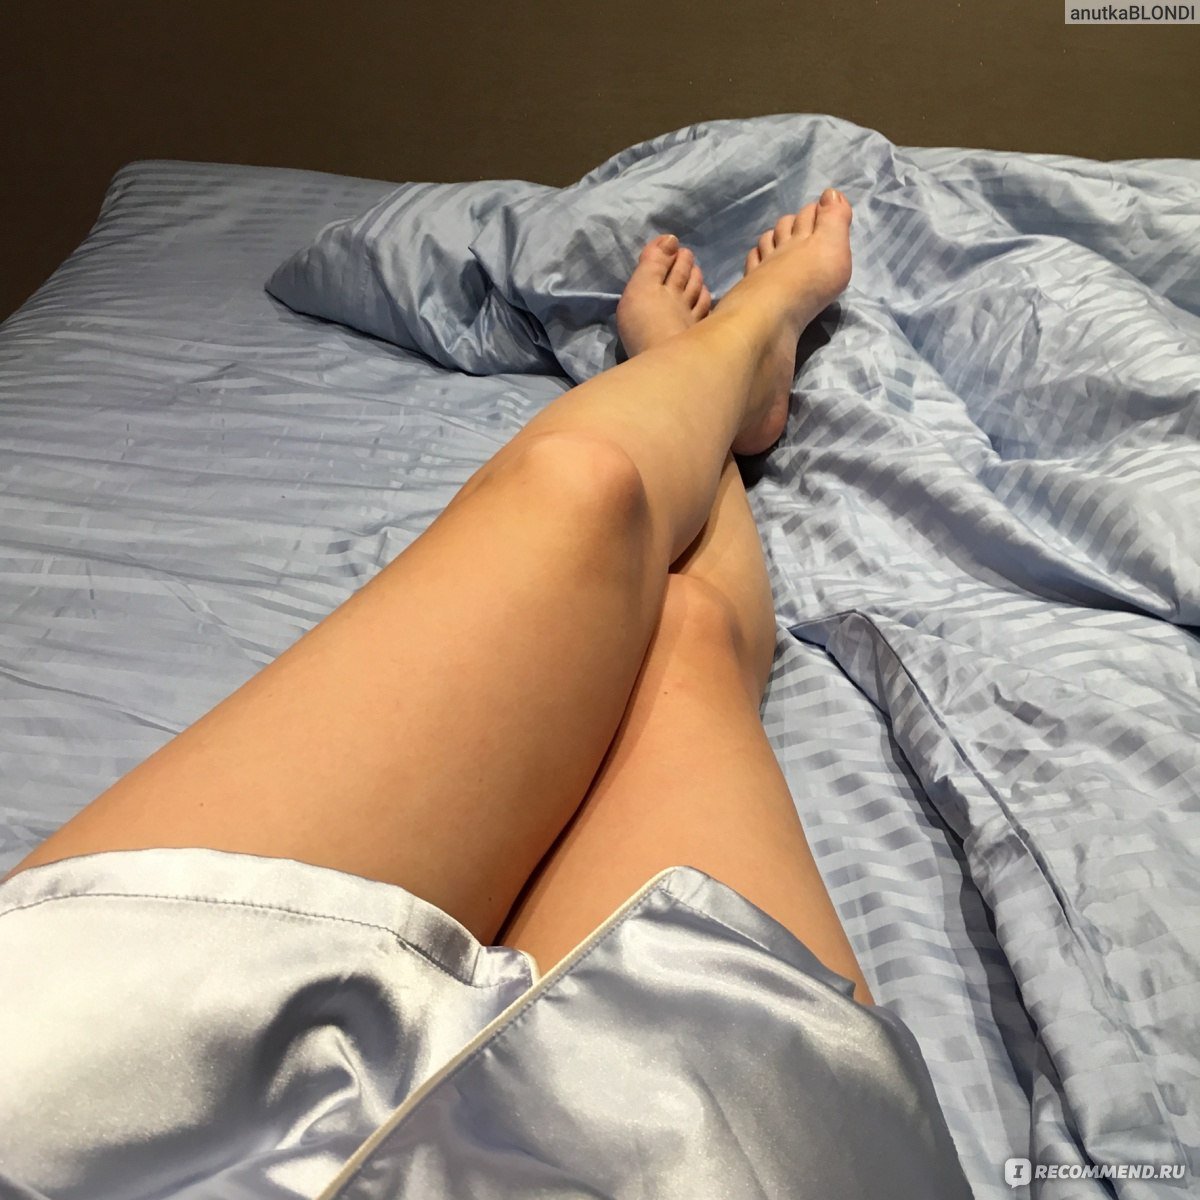 Ножки девушки в кровати 59 фото